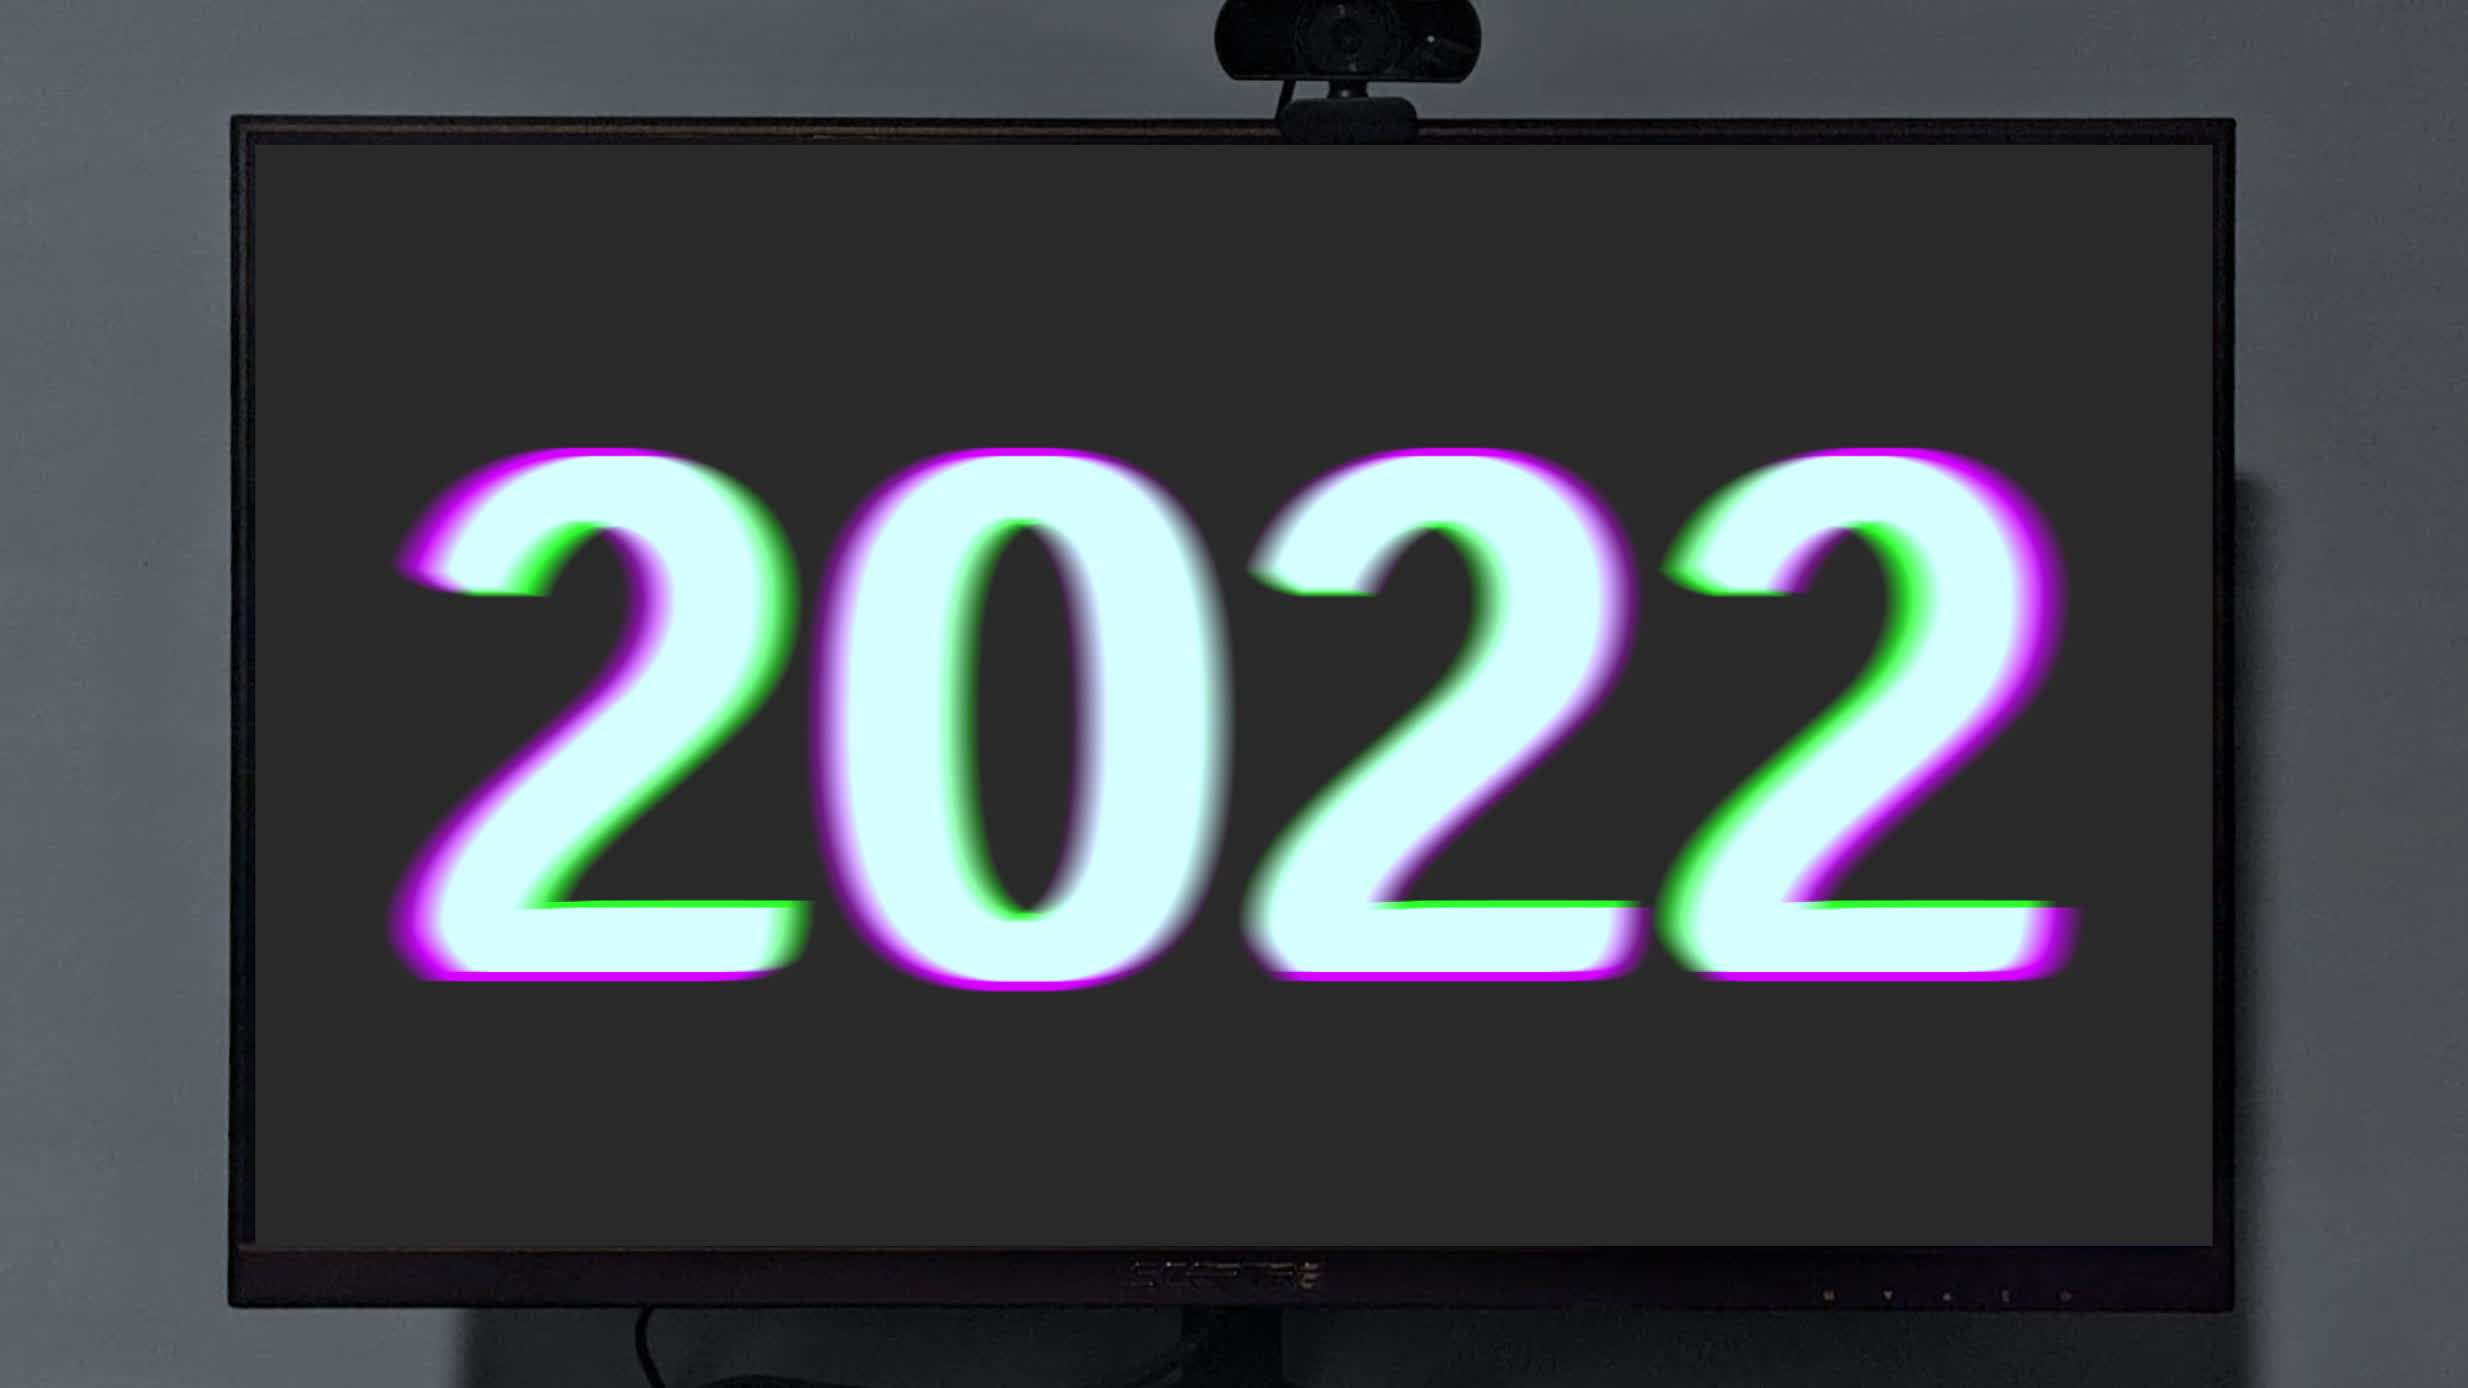 davecode 2022 update